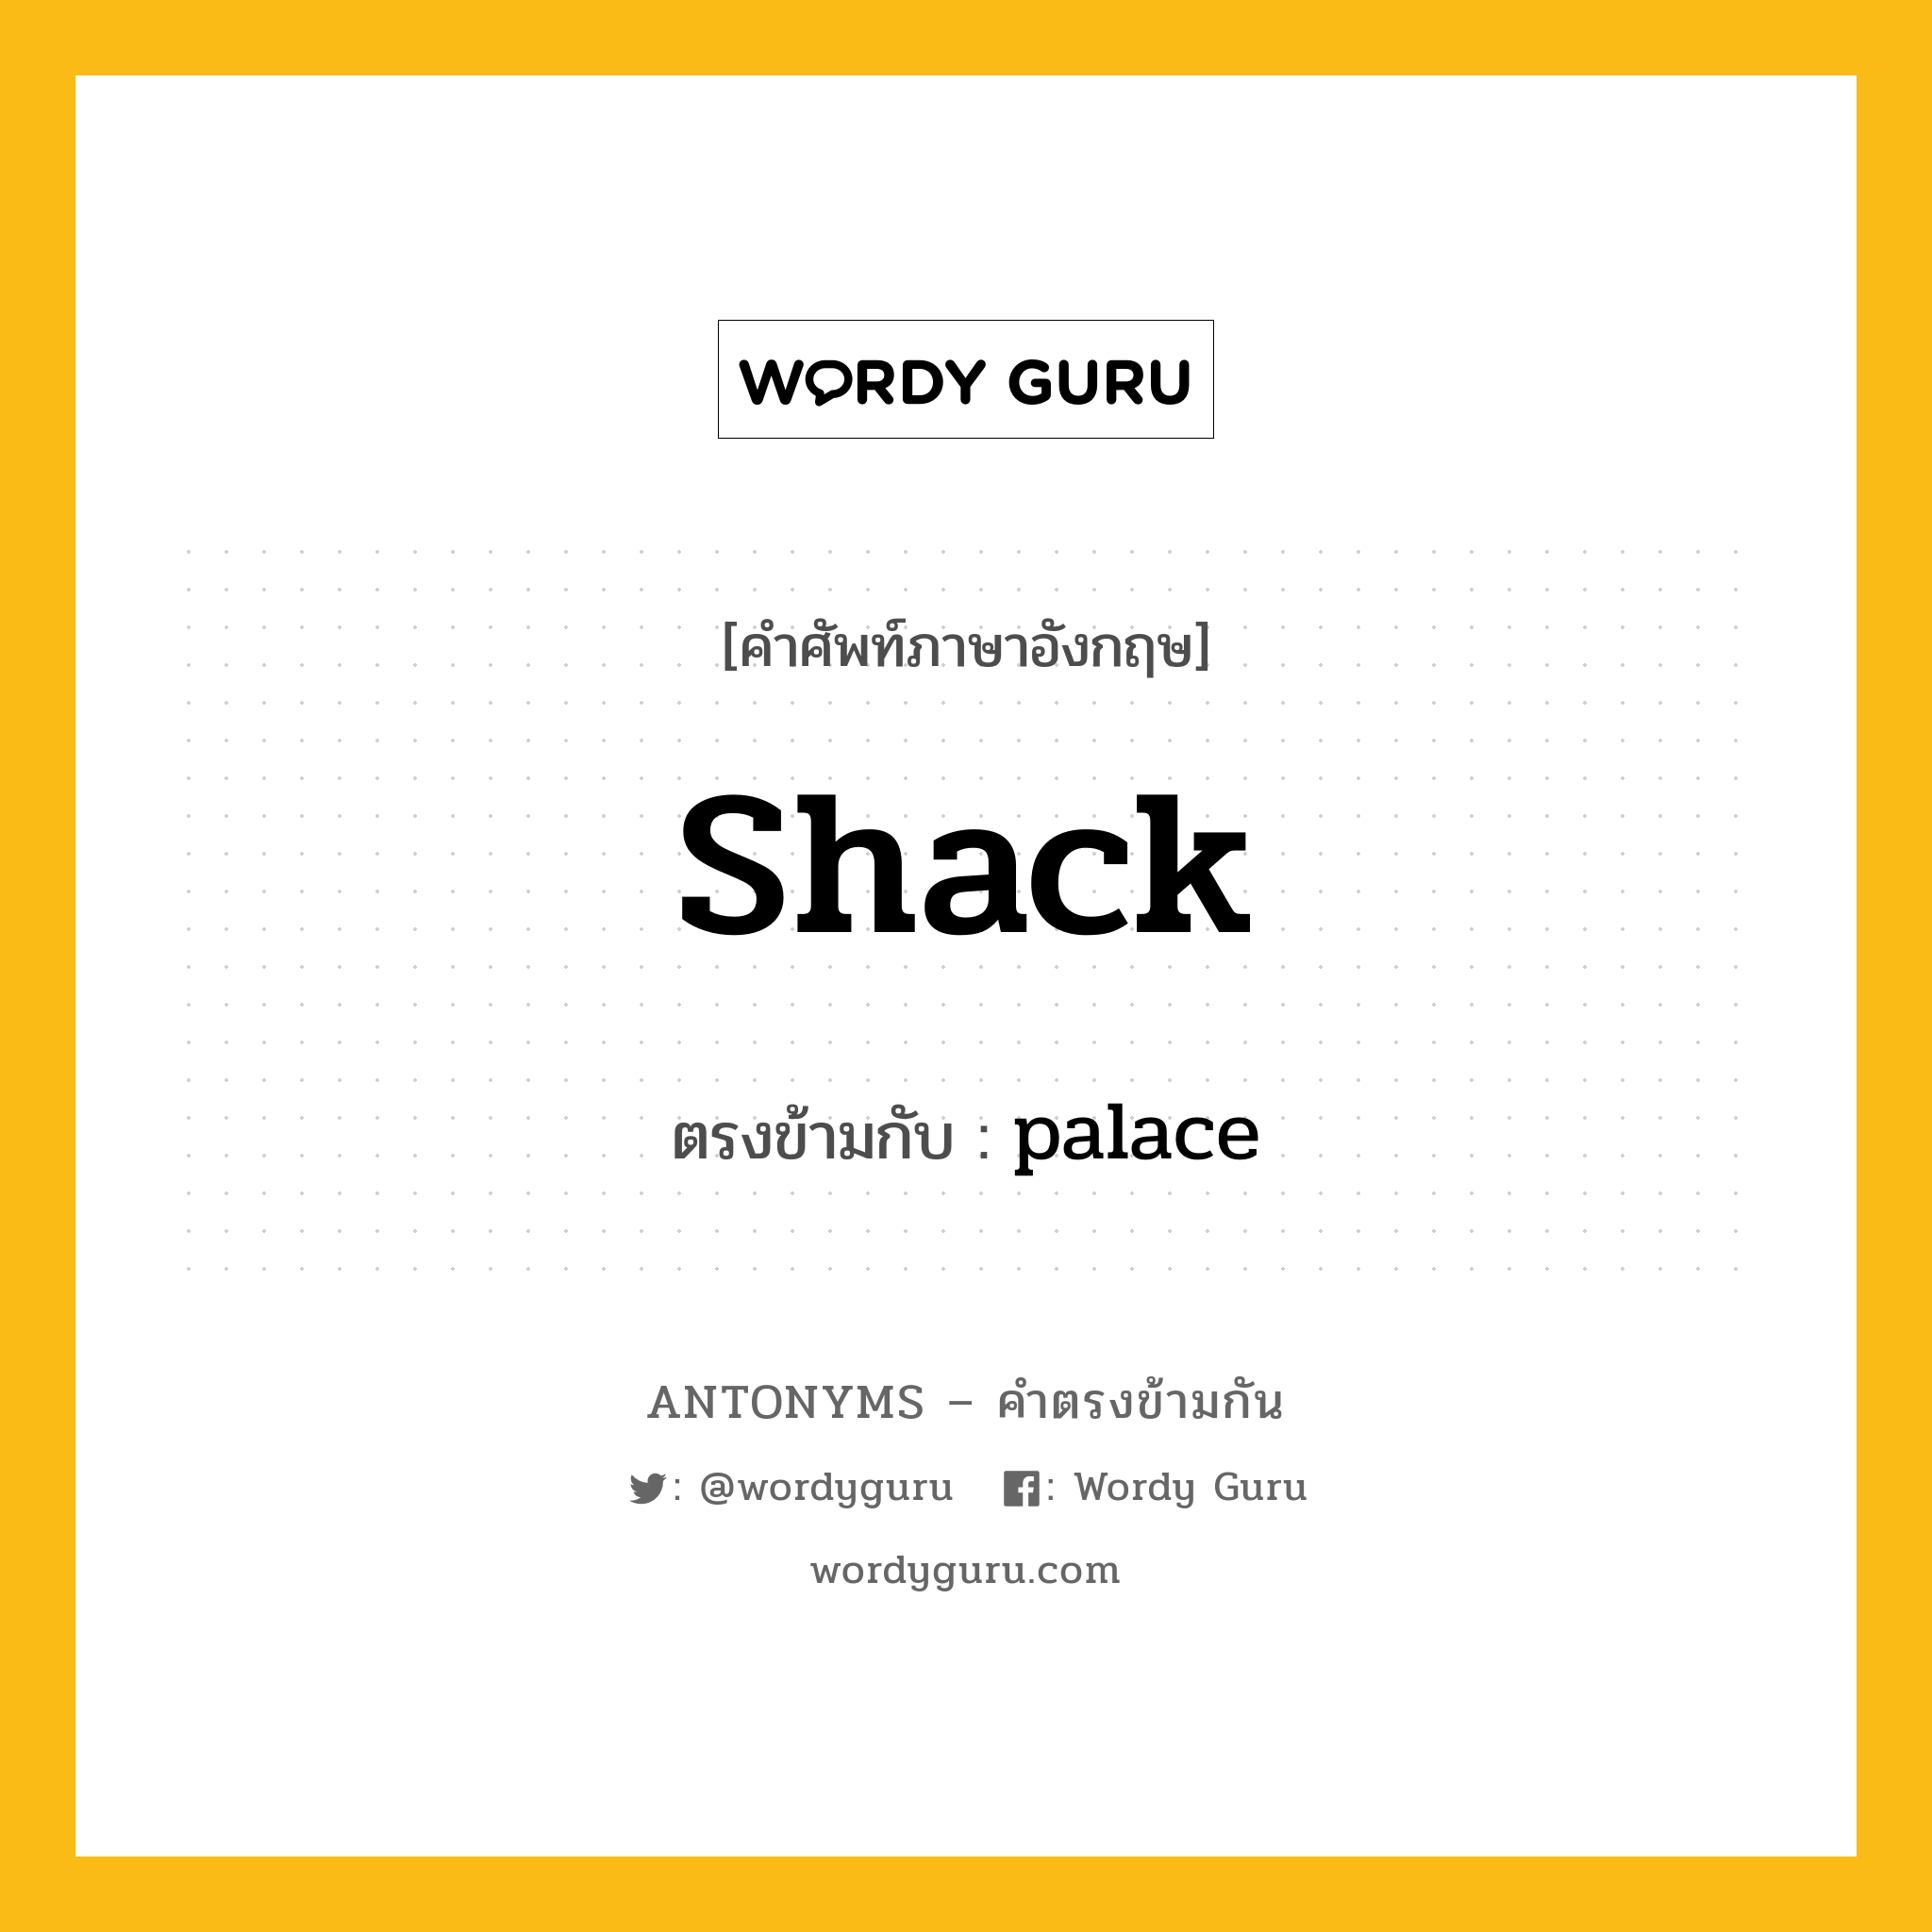 shack เป็นคำตรงข้ามกับคำไหนบ้าง?, คำศัพท์ภาษาอังกฤษ shack ตรงข้ามกับ palace หมวด palace